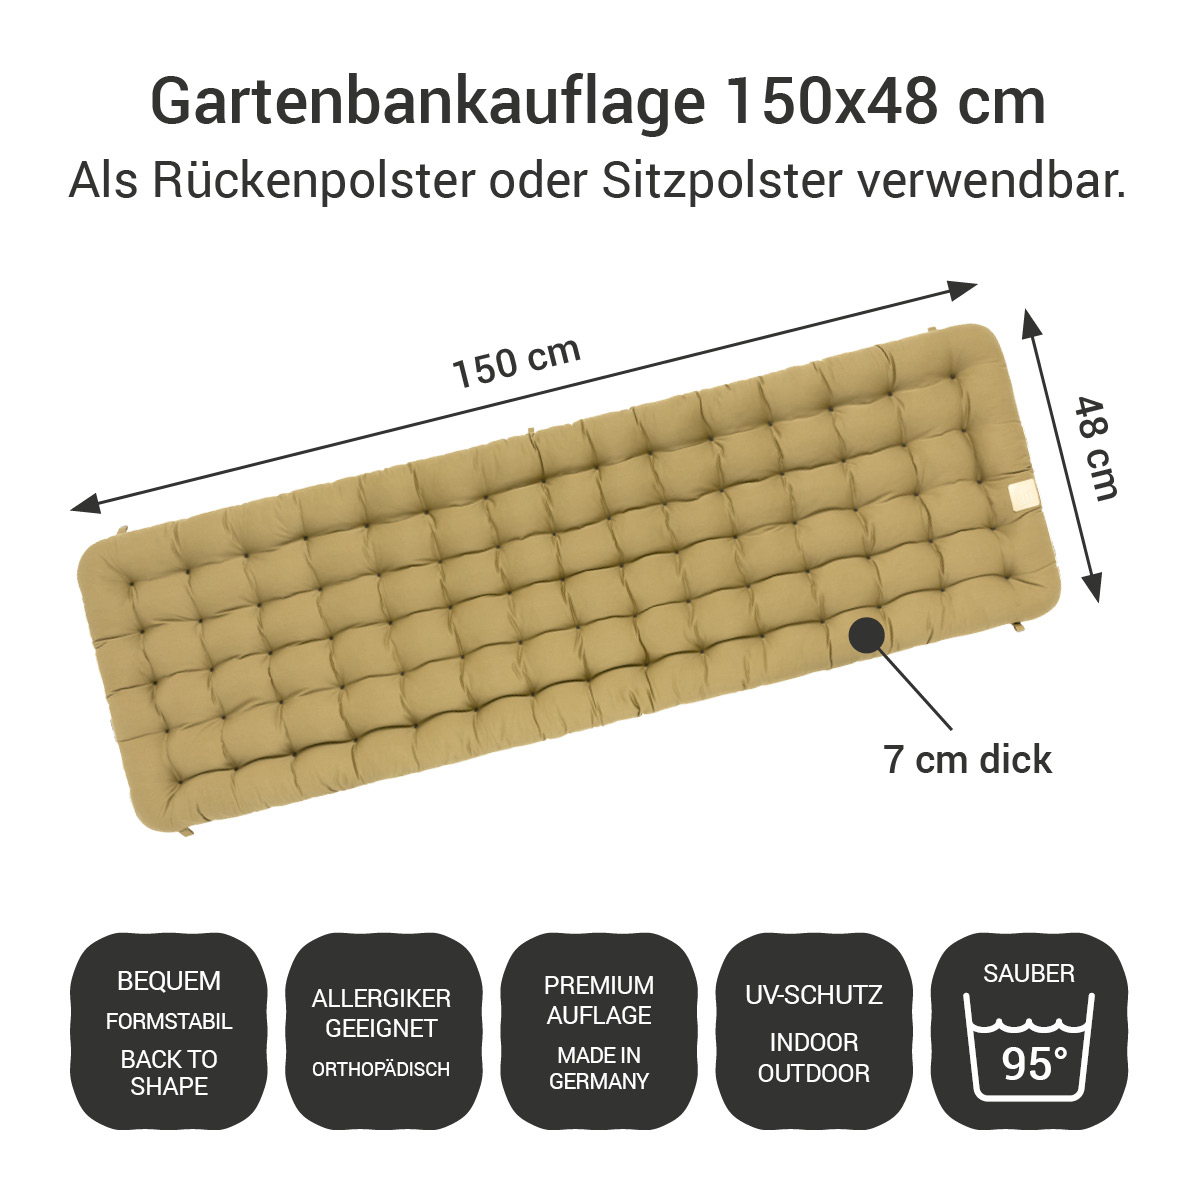 Gartenbank Auflage beige 150x48 cm / 150 x 50 cm | bequem & orthopädisch, komplett im Ganzen waschbar bis 95°C, wetterfest, Made in Germany